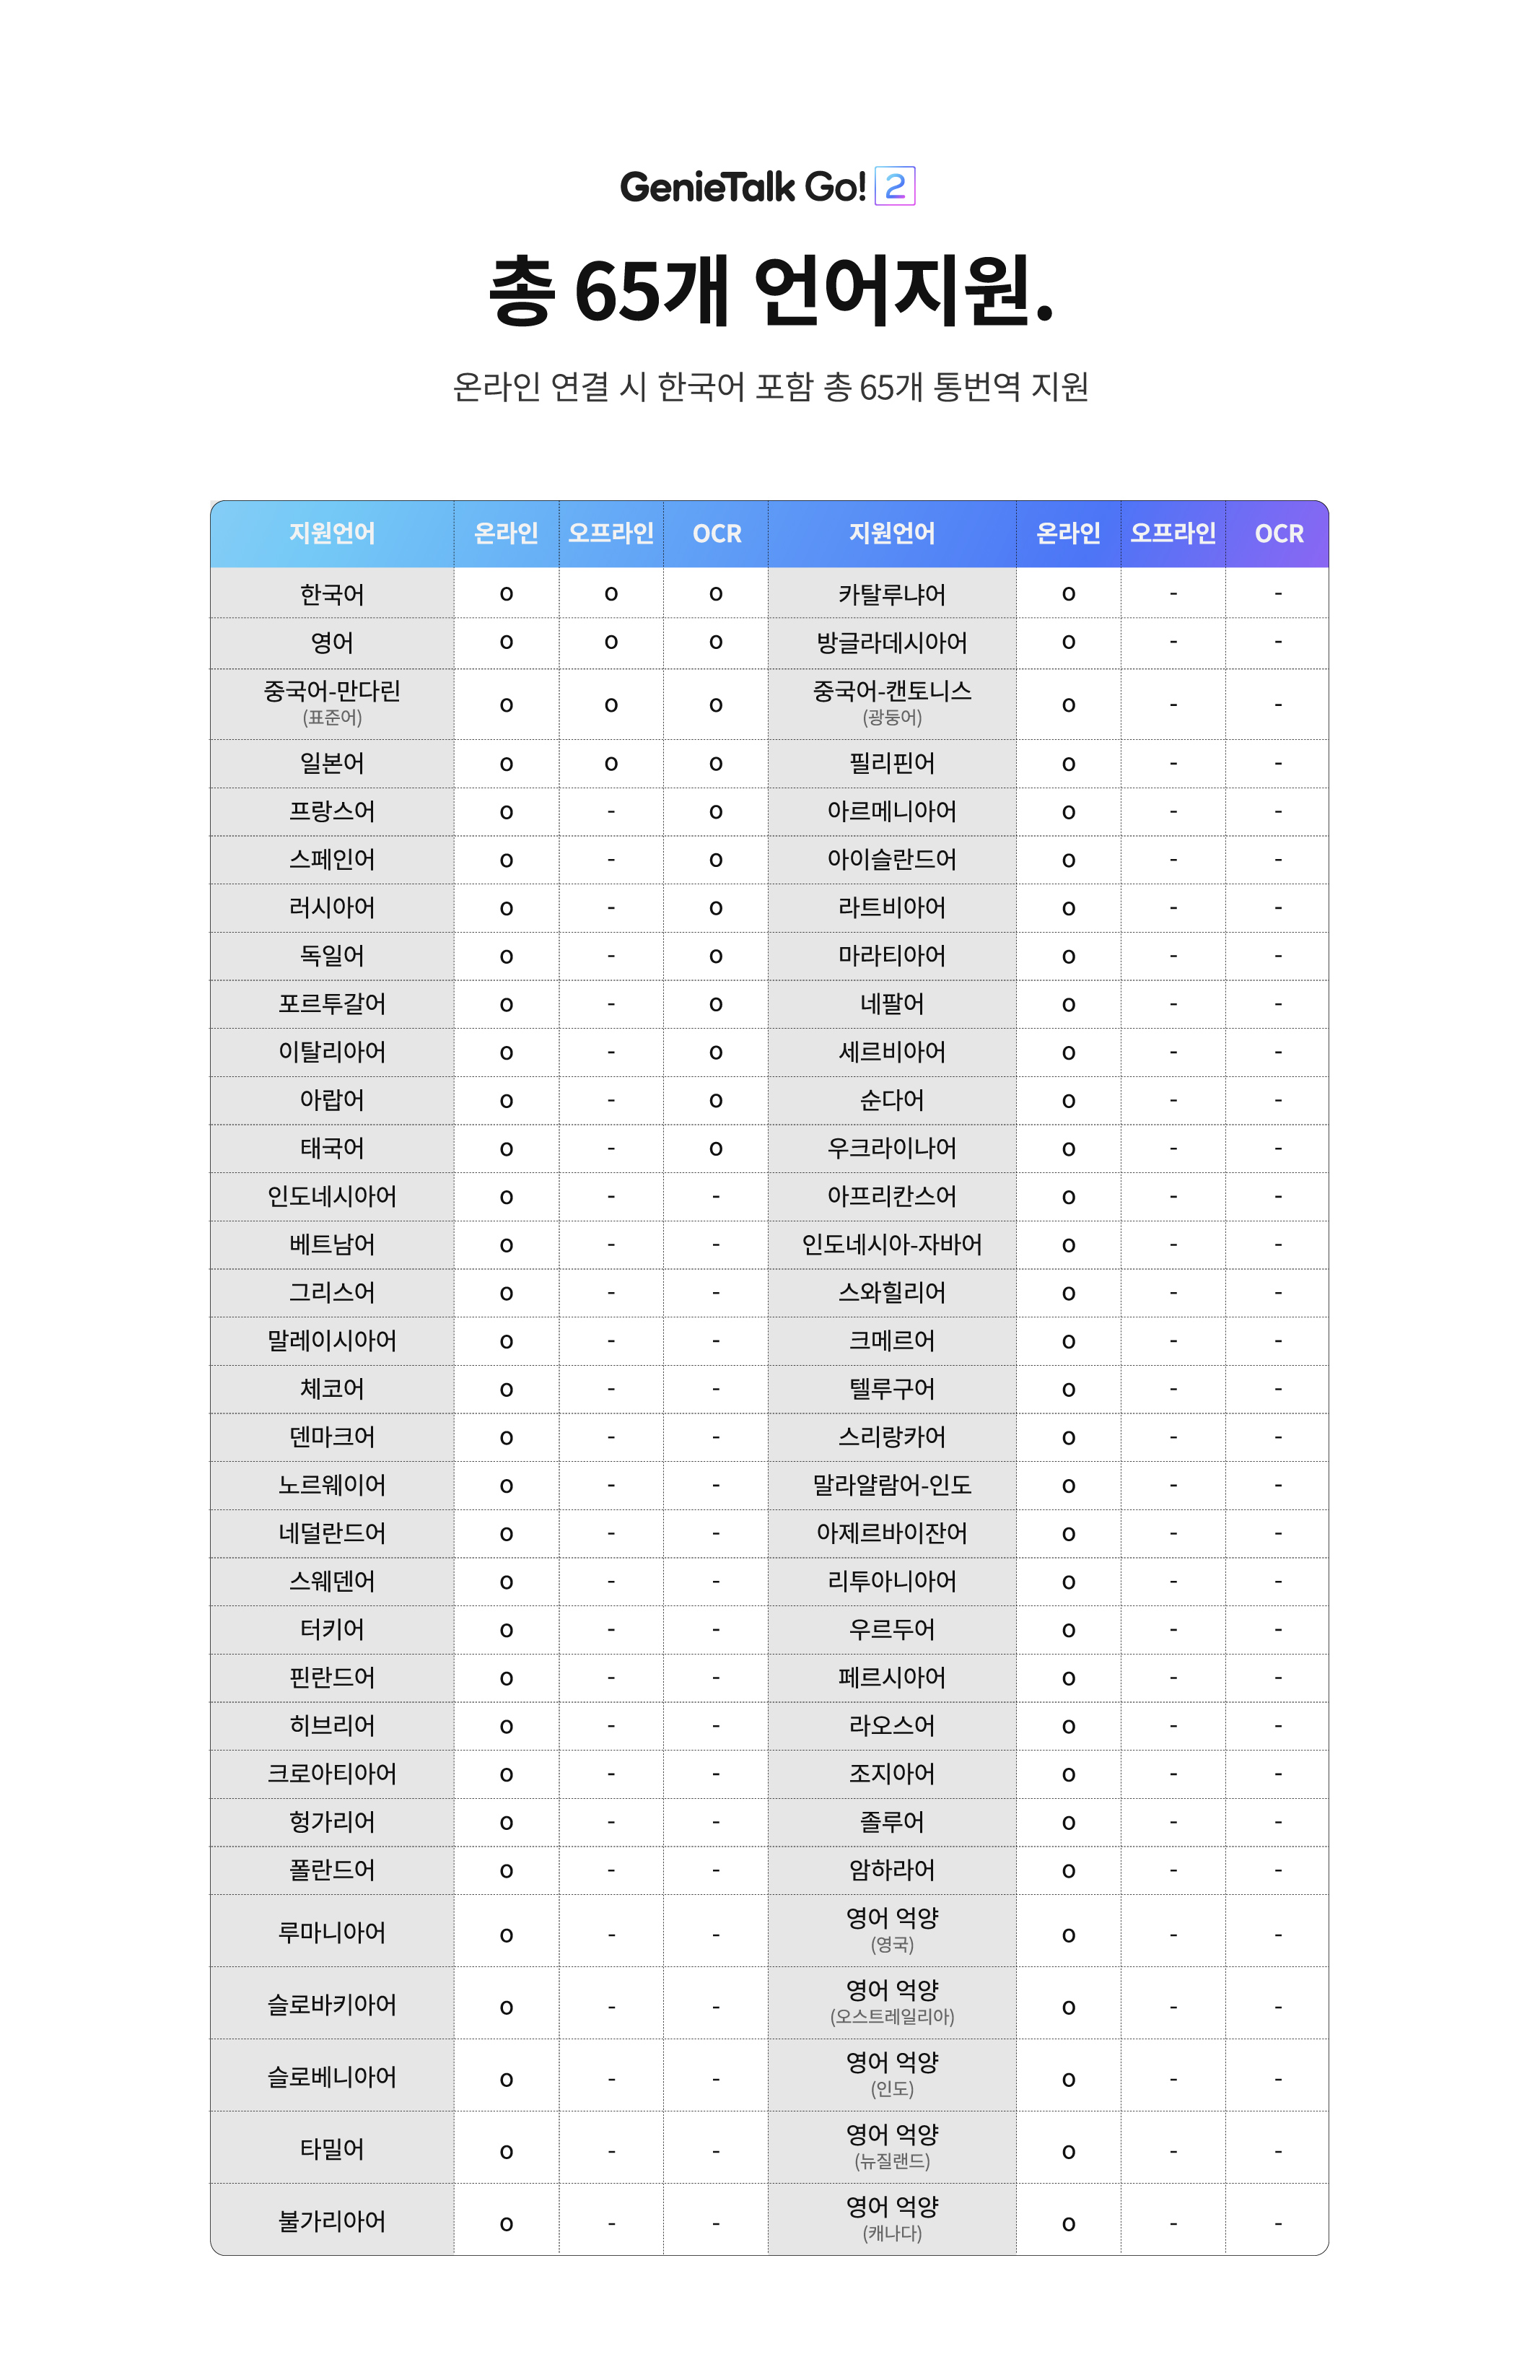 총65개 언어지원. 온라인 연결 시 한국어 포함 총65개 통번역지원